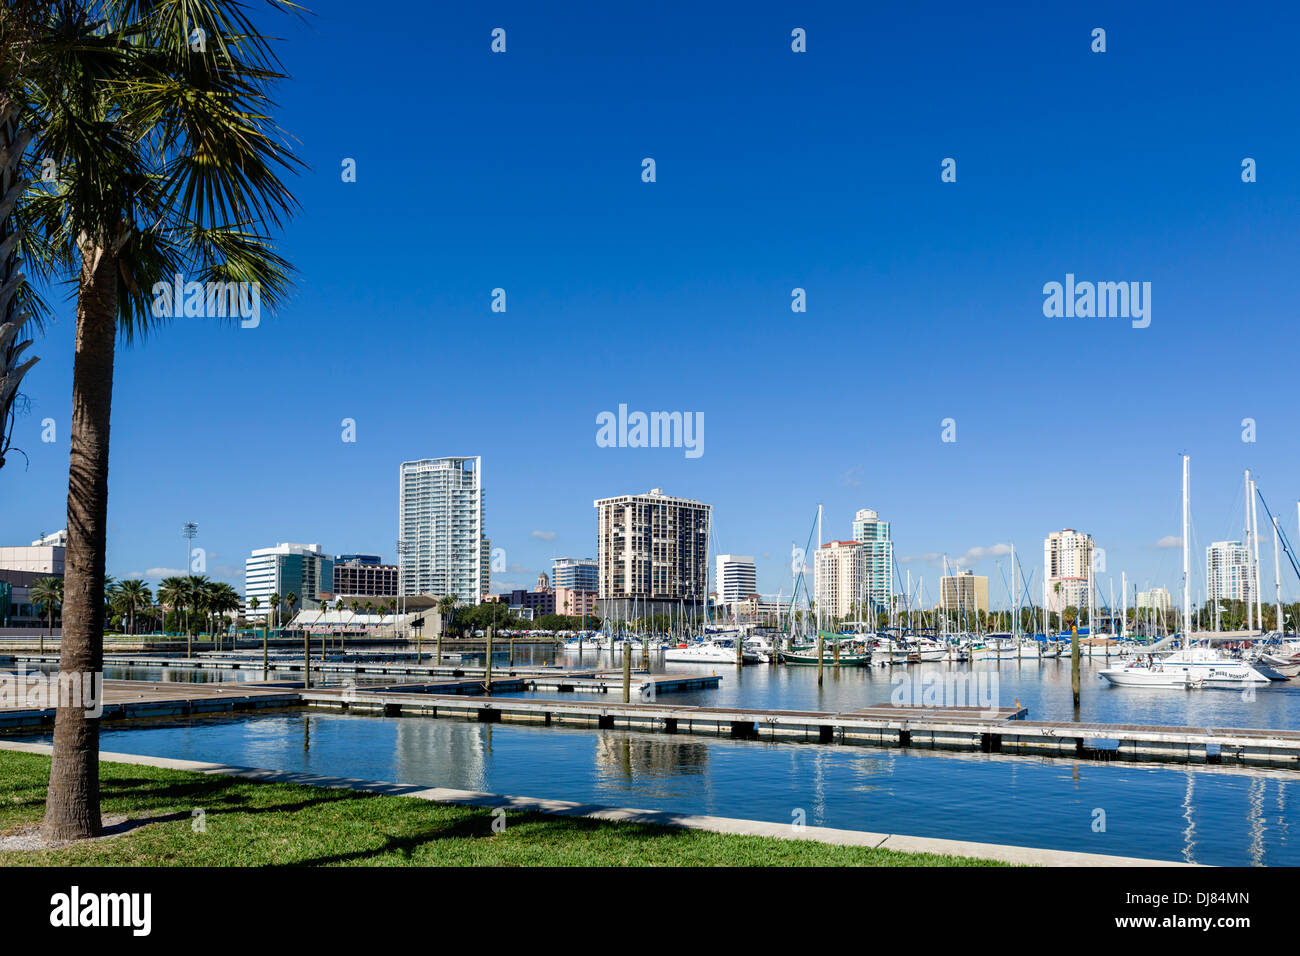 La marina et la ville d'Albert Whitted Park, St Petersburg, Florida, USA Banque D'Images